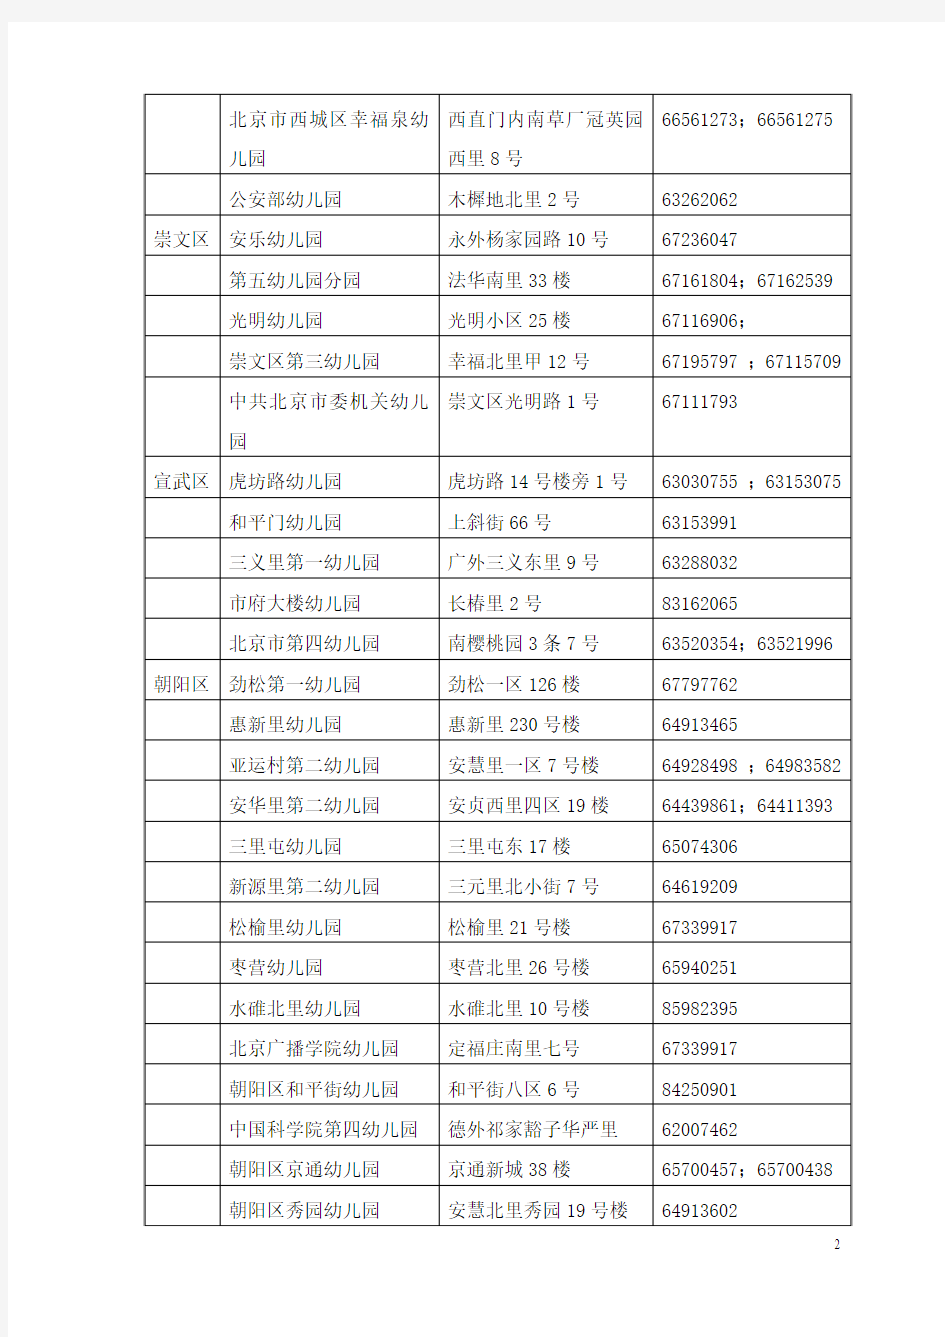 北京市社区儿童早期教育示范基地名单